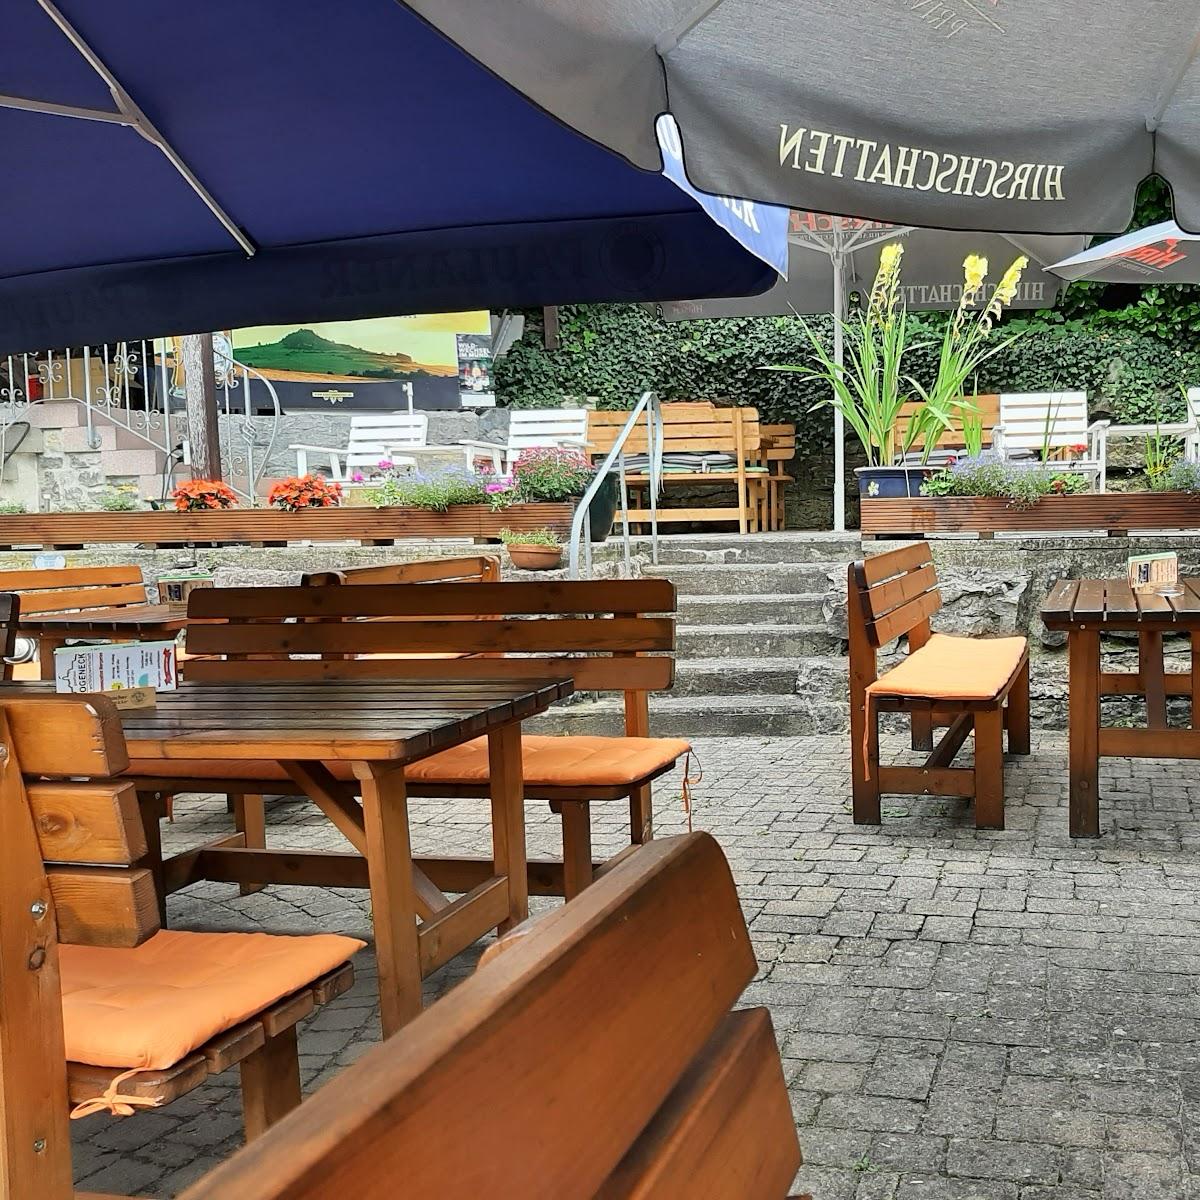 Restaurant "Gasthaus Bogeneck" in Oberndorf am Neckar